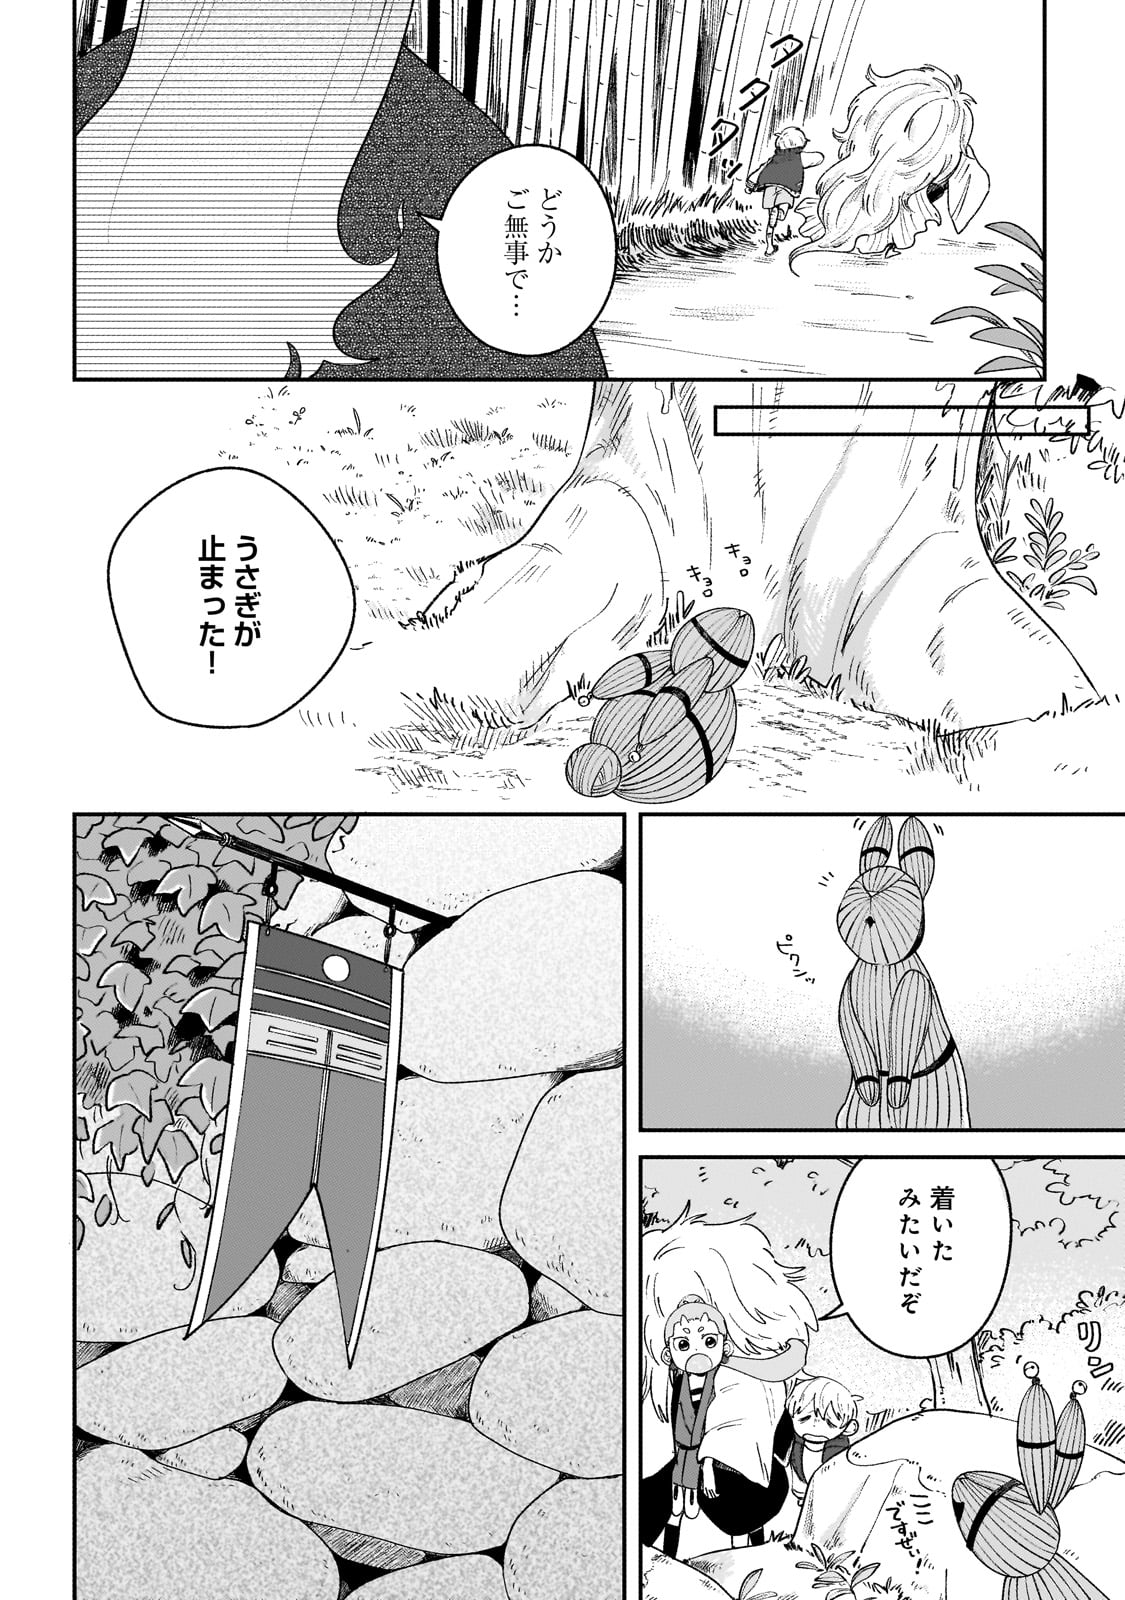 Boku to Ayakashi no 365 Nichi - Chapter 5 - Page 4